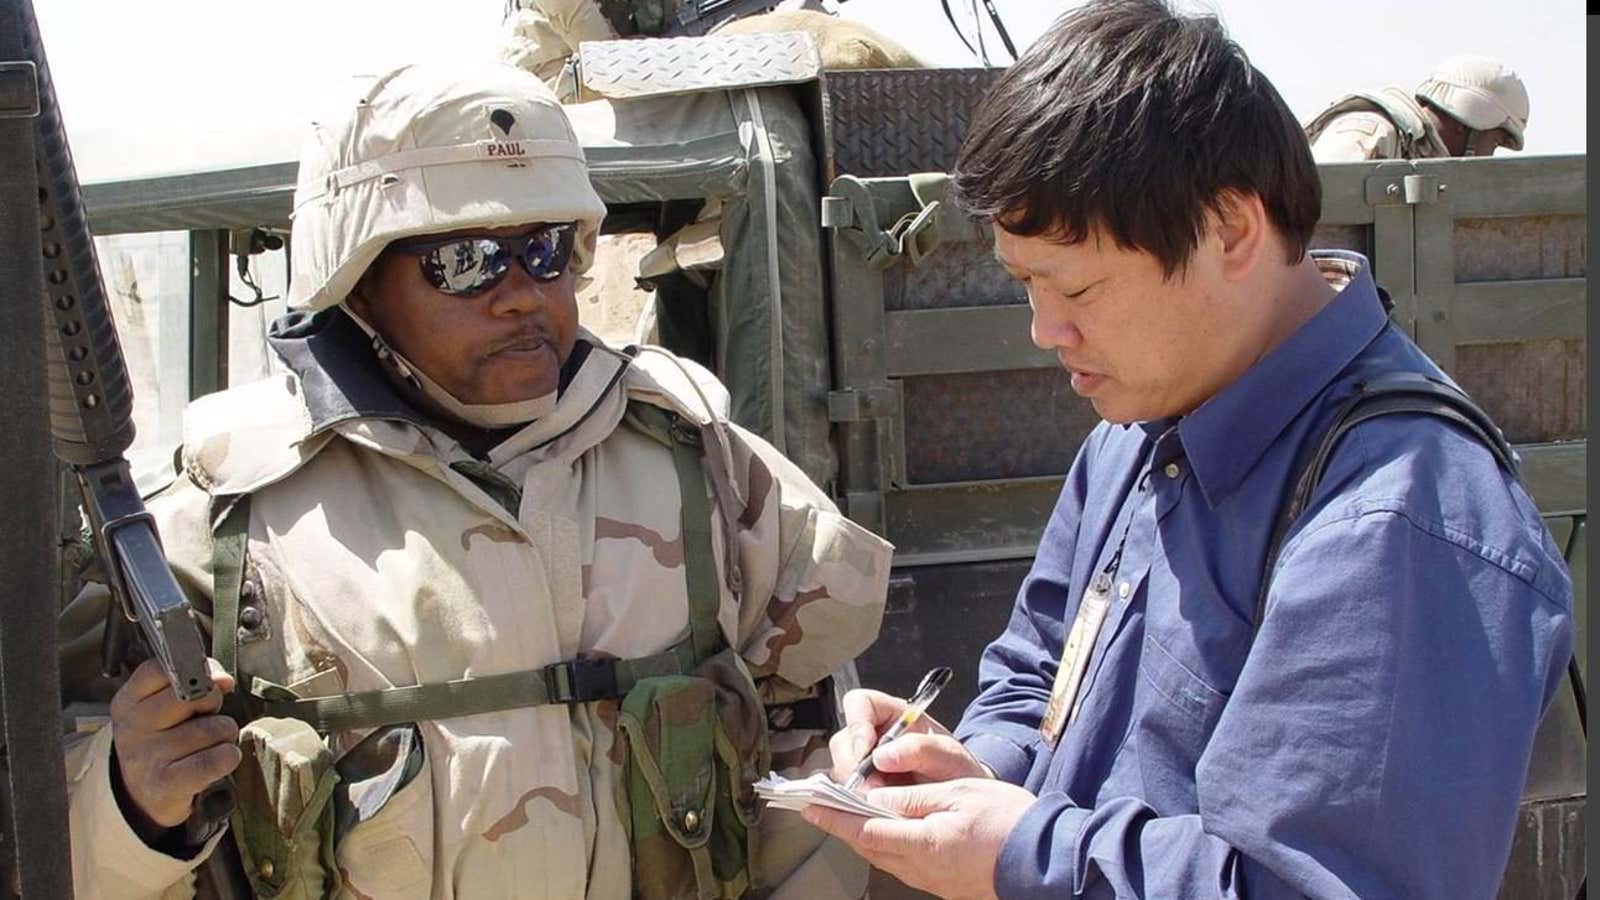 Hu Xijin interviews a US soldier at the Iraq-Kuwait border in 2003.